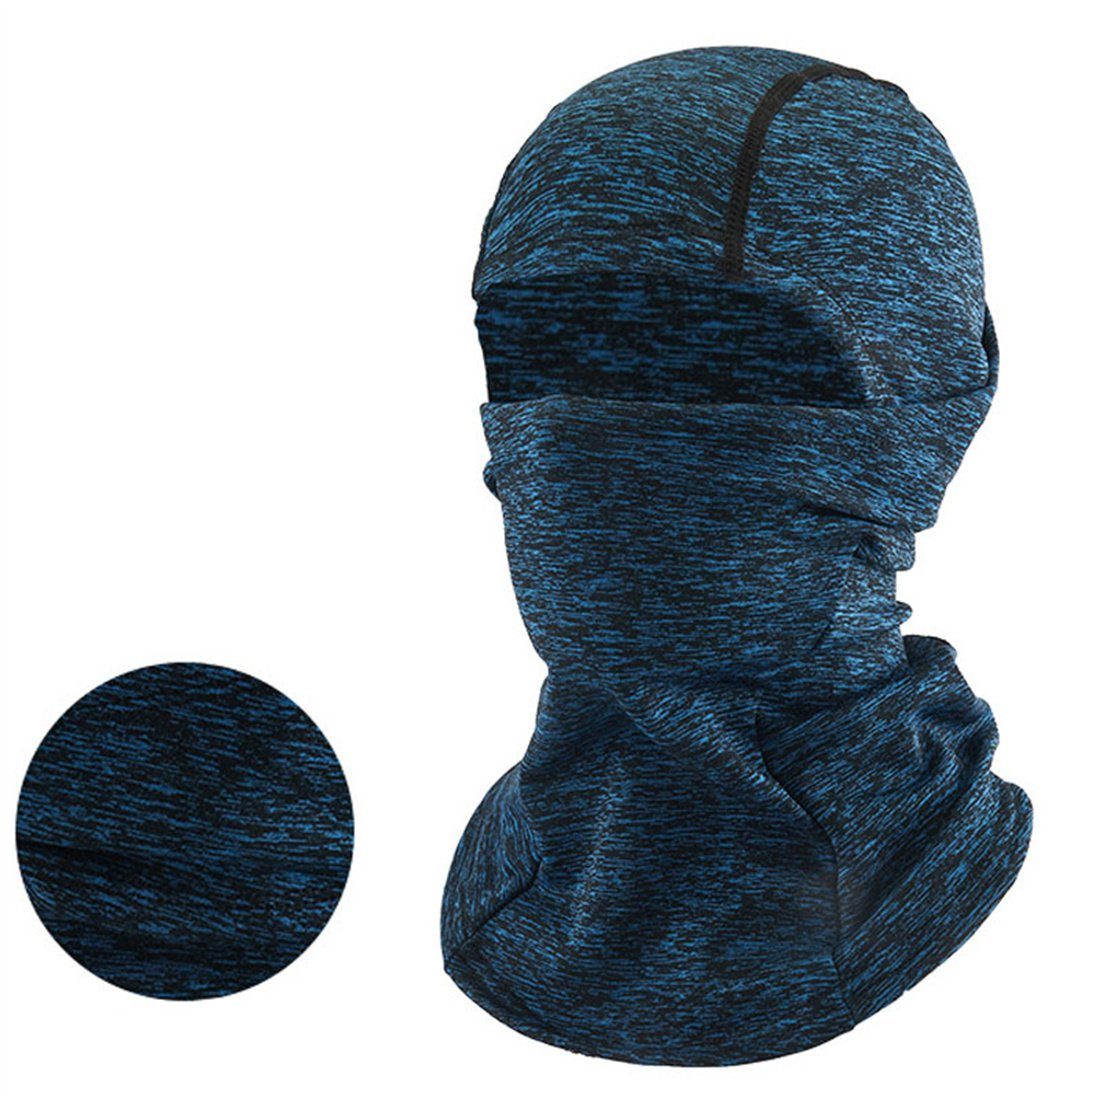 Sturmhaube blau Kopfbedeckung, warme Ski kalte Winter Radfahren Maske, unisex DÖRÖY